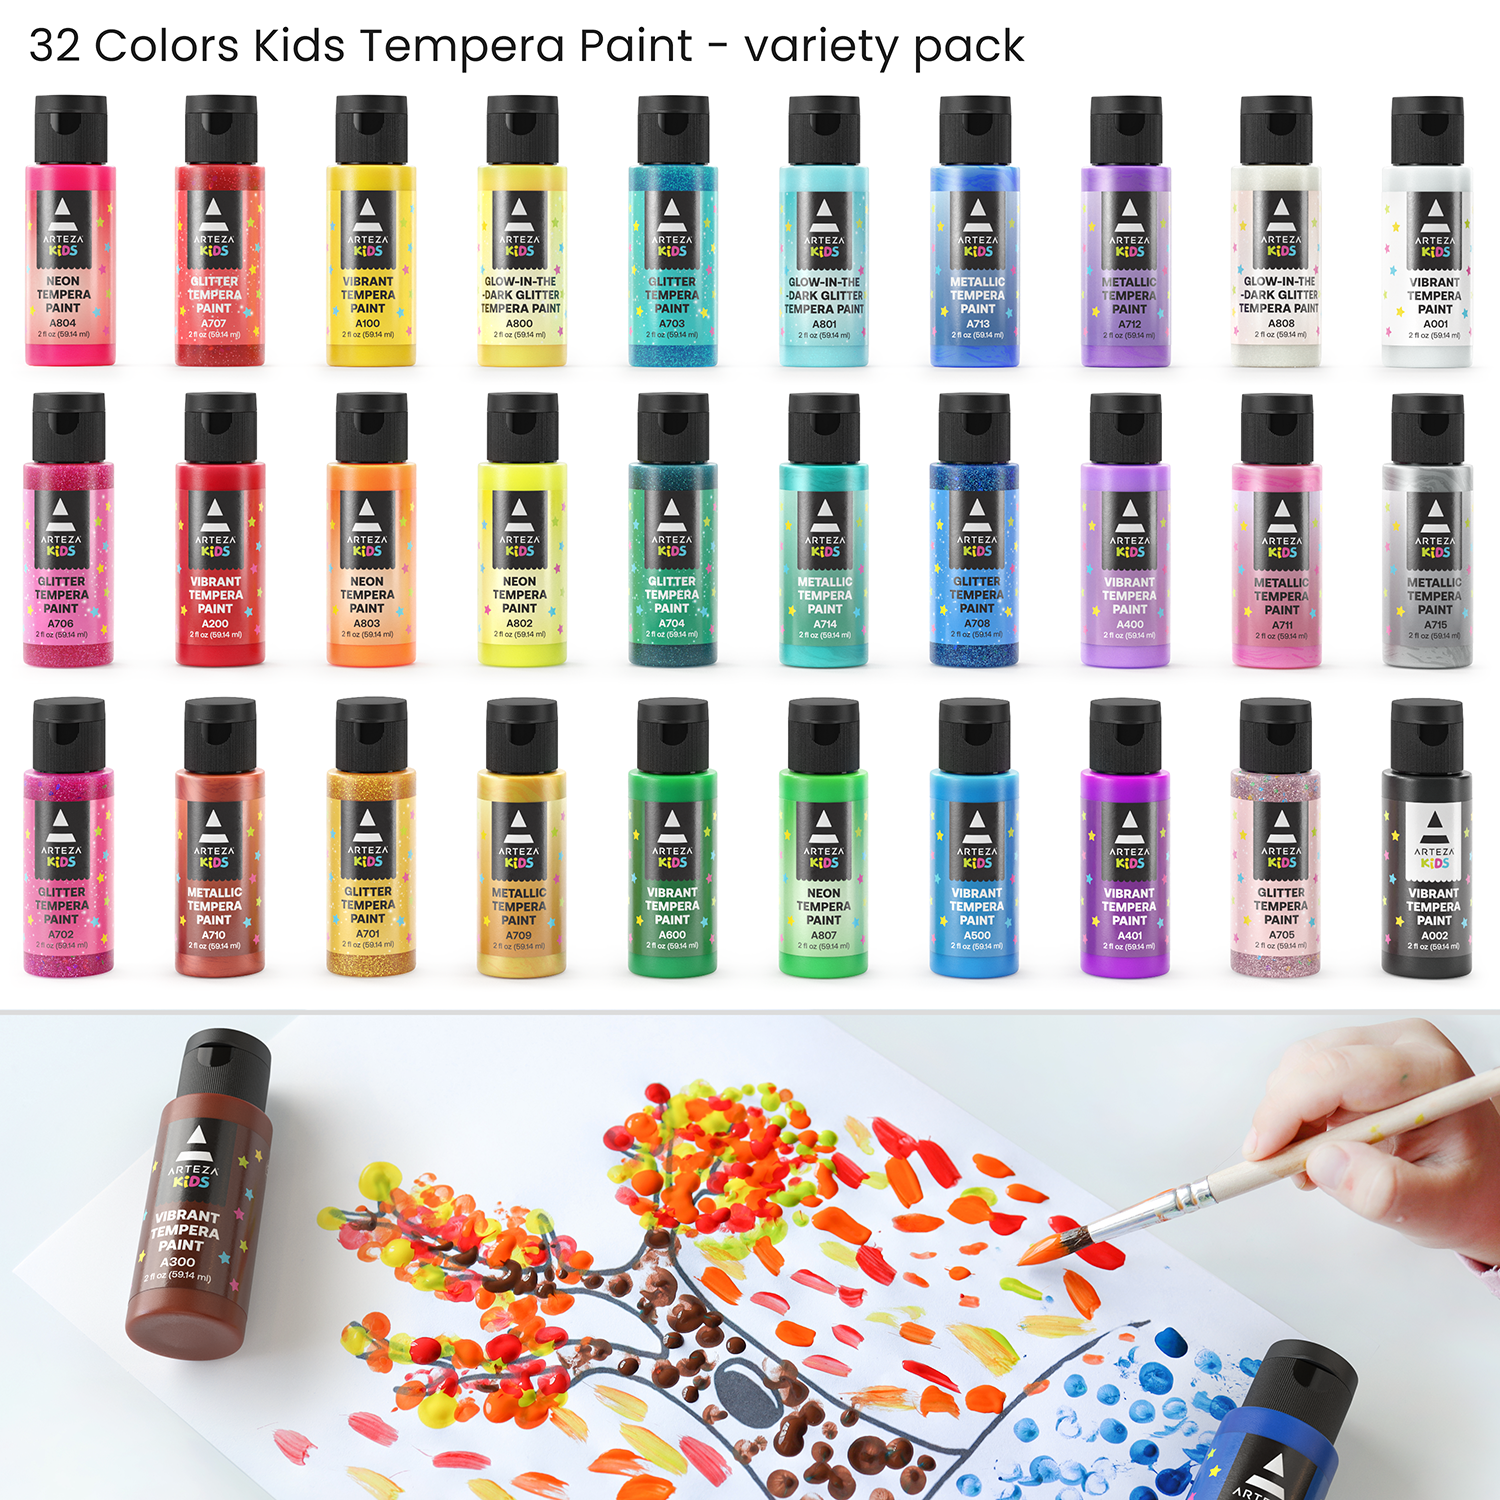  Arteza Kids Juego de pintura de témpera, 16 colores ricos y no  tóxicos lavables (13.5 oz/13.5 fl oz), suministros de arte para pintura de  dedos, pintura de esponja y pintura de